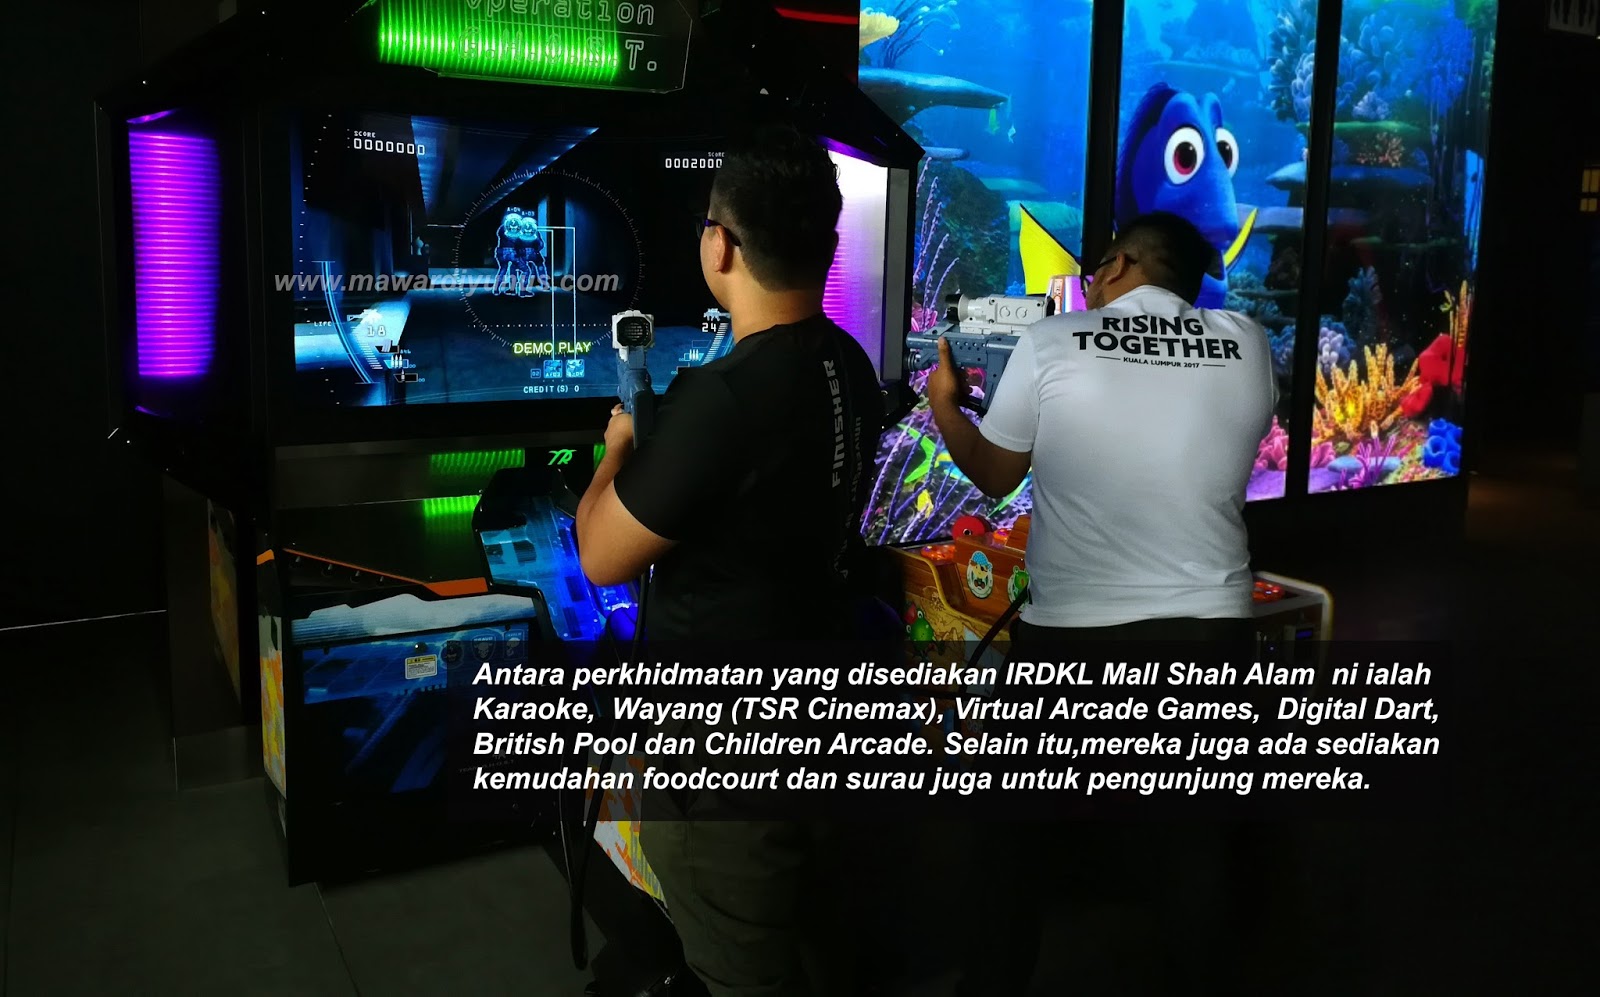 Lepak Dan Berhibur Bersama Keluarga Di Irdkl Mall Shah Alam Mawardi Yunus